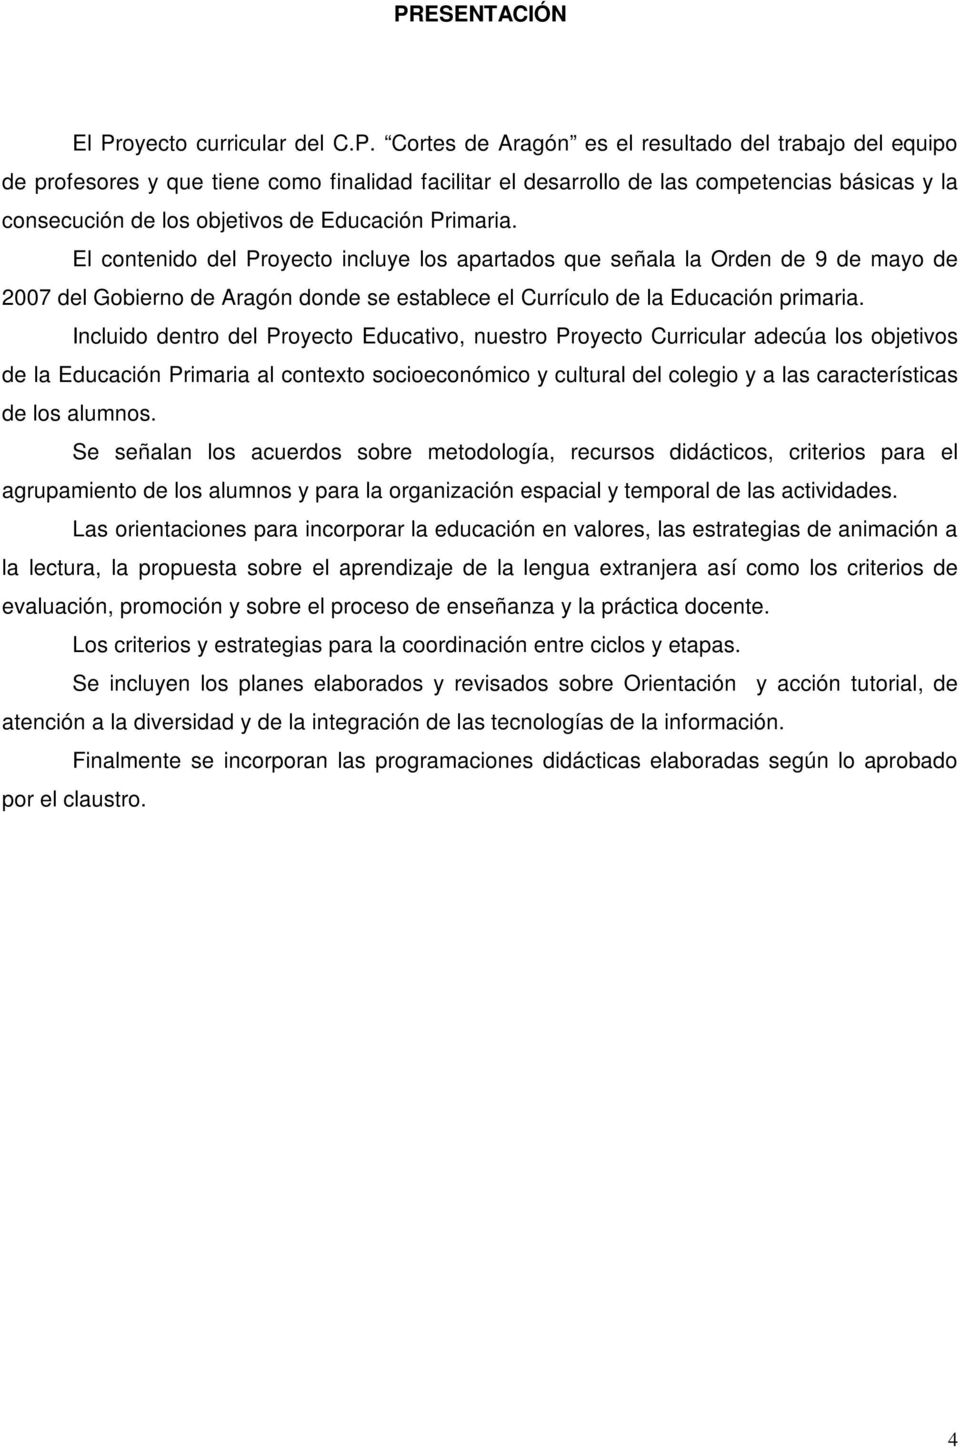 El contenido del Proyecto incluye los apartados que señala la Orden de 9 de mayo de 2007 del Gobierno de Aragón donde se establece el Currículo de la Educación primaria.